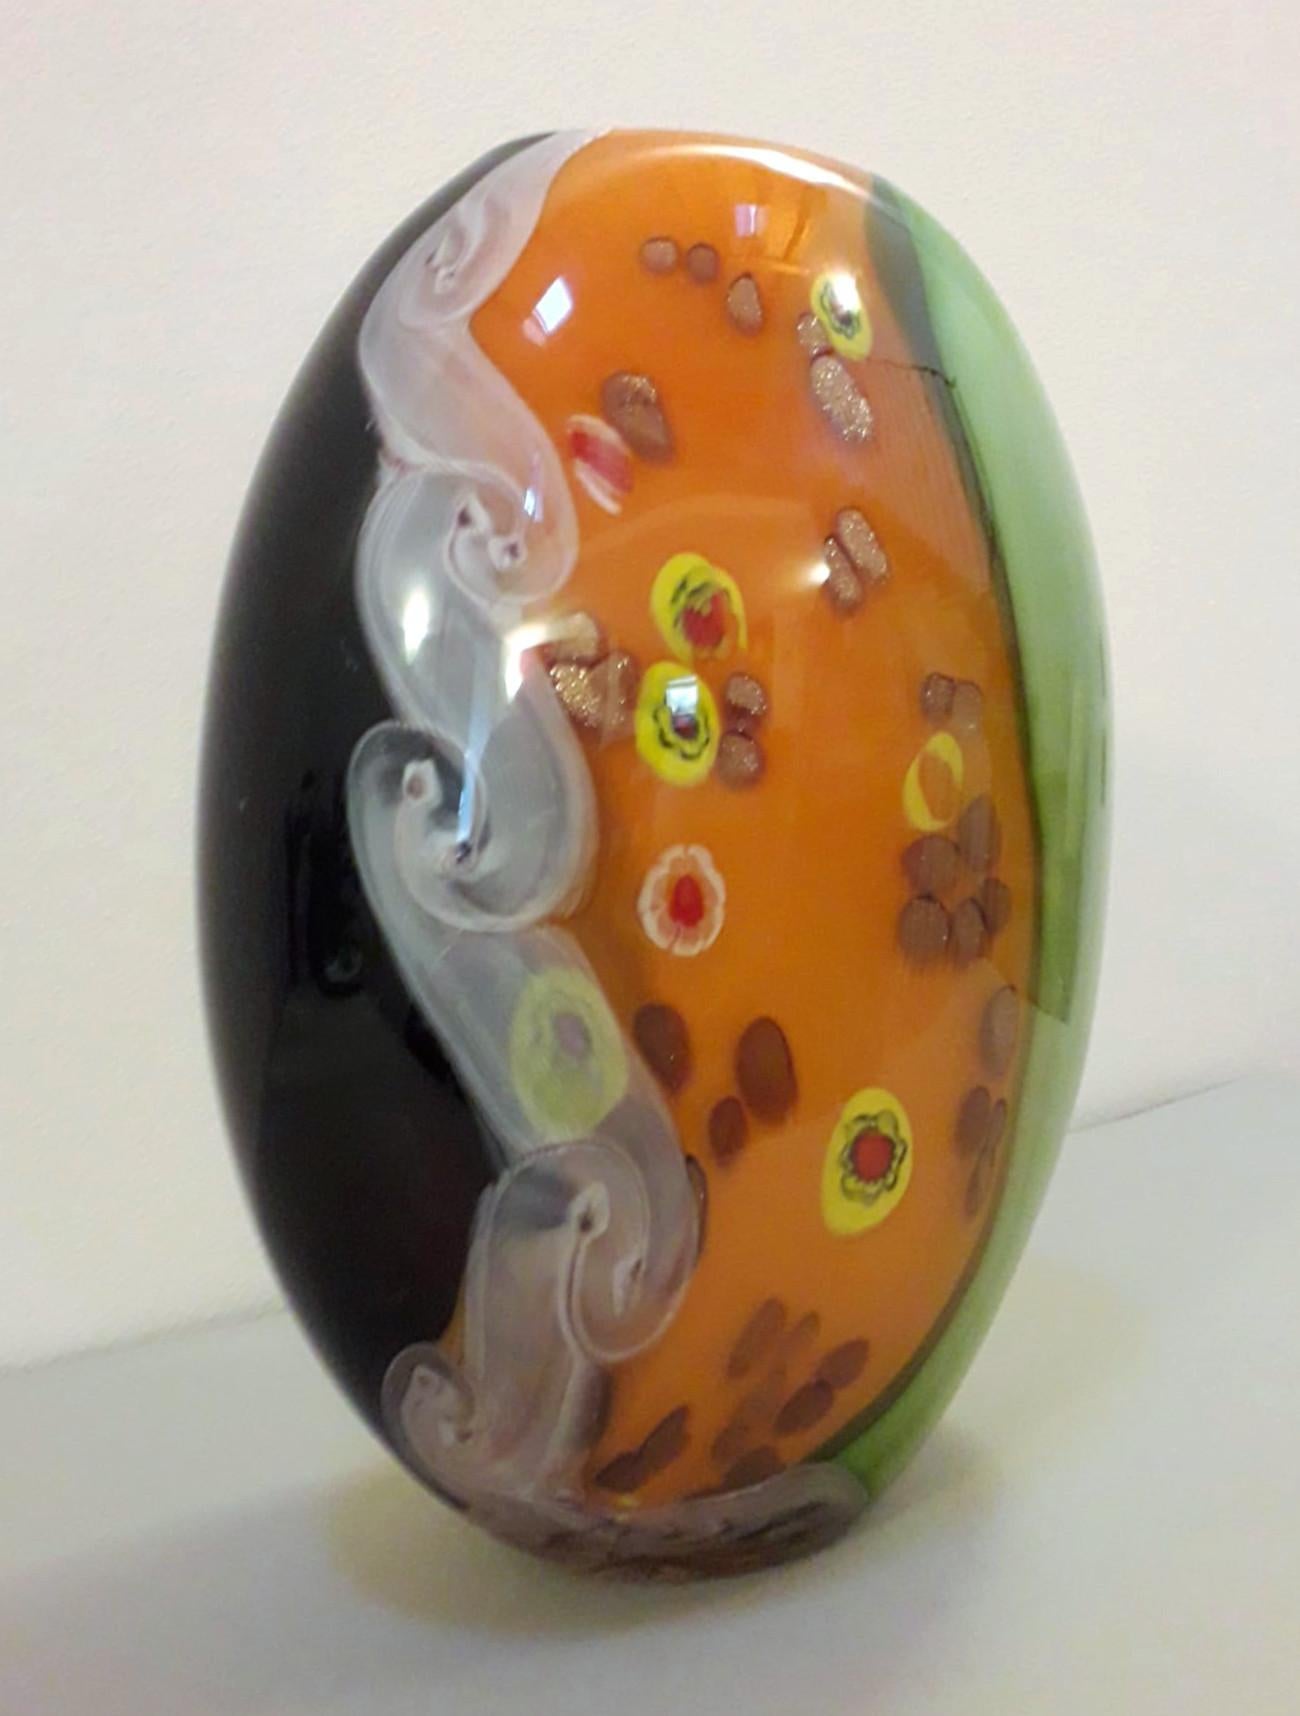 Vase aus italienischem Muranoglas mit grüner, orangefarbener, weißer und schwarzer Farbe, durchzogen mit Murrine / Hergestellt in Italien von Effe Due, ca. 1970er Jahre
Originaletikett und -marke auf dem Glas
Maße: Höhe 14 Zoll, Durchmesser 11